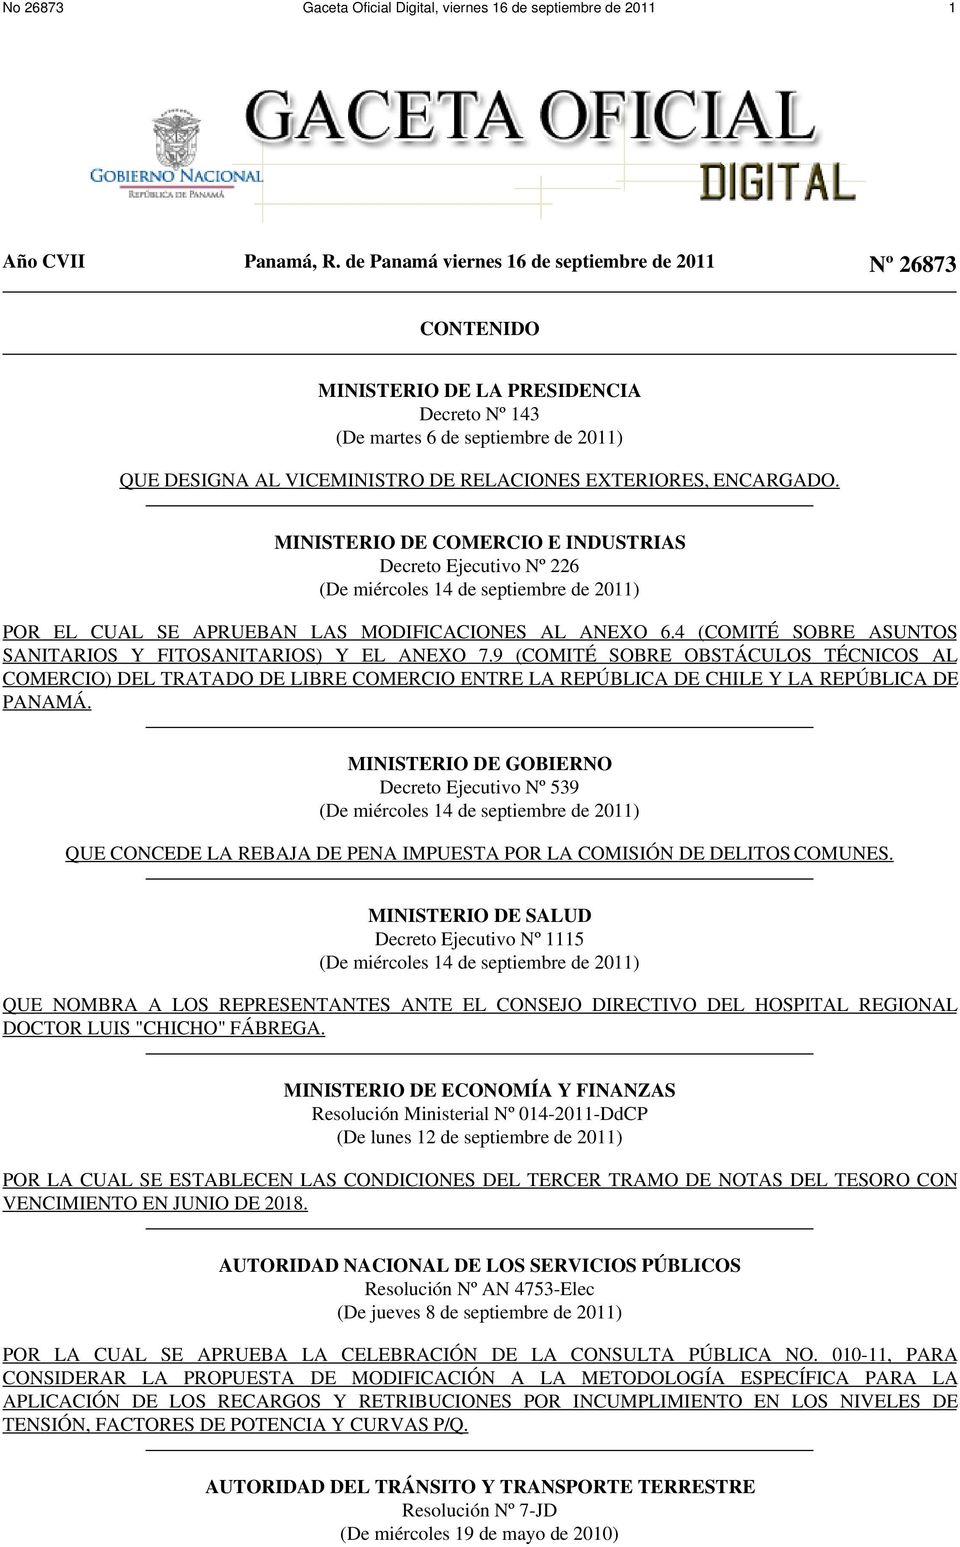 ENCARGADO. MINISTERIO DE COMERCIO E INDUSTRIAS Decreto Ejecutivo Nº 226 (De miércoles 14 de septiembre de 2011) POR EL CUAL SE APRUEBAN LAS MODIFICACIONES AL ANEXO 6.